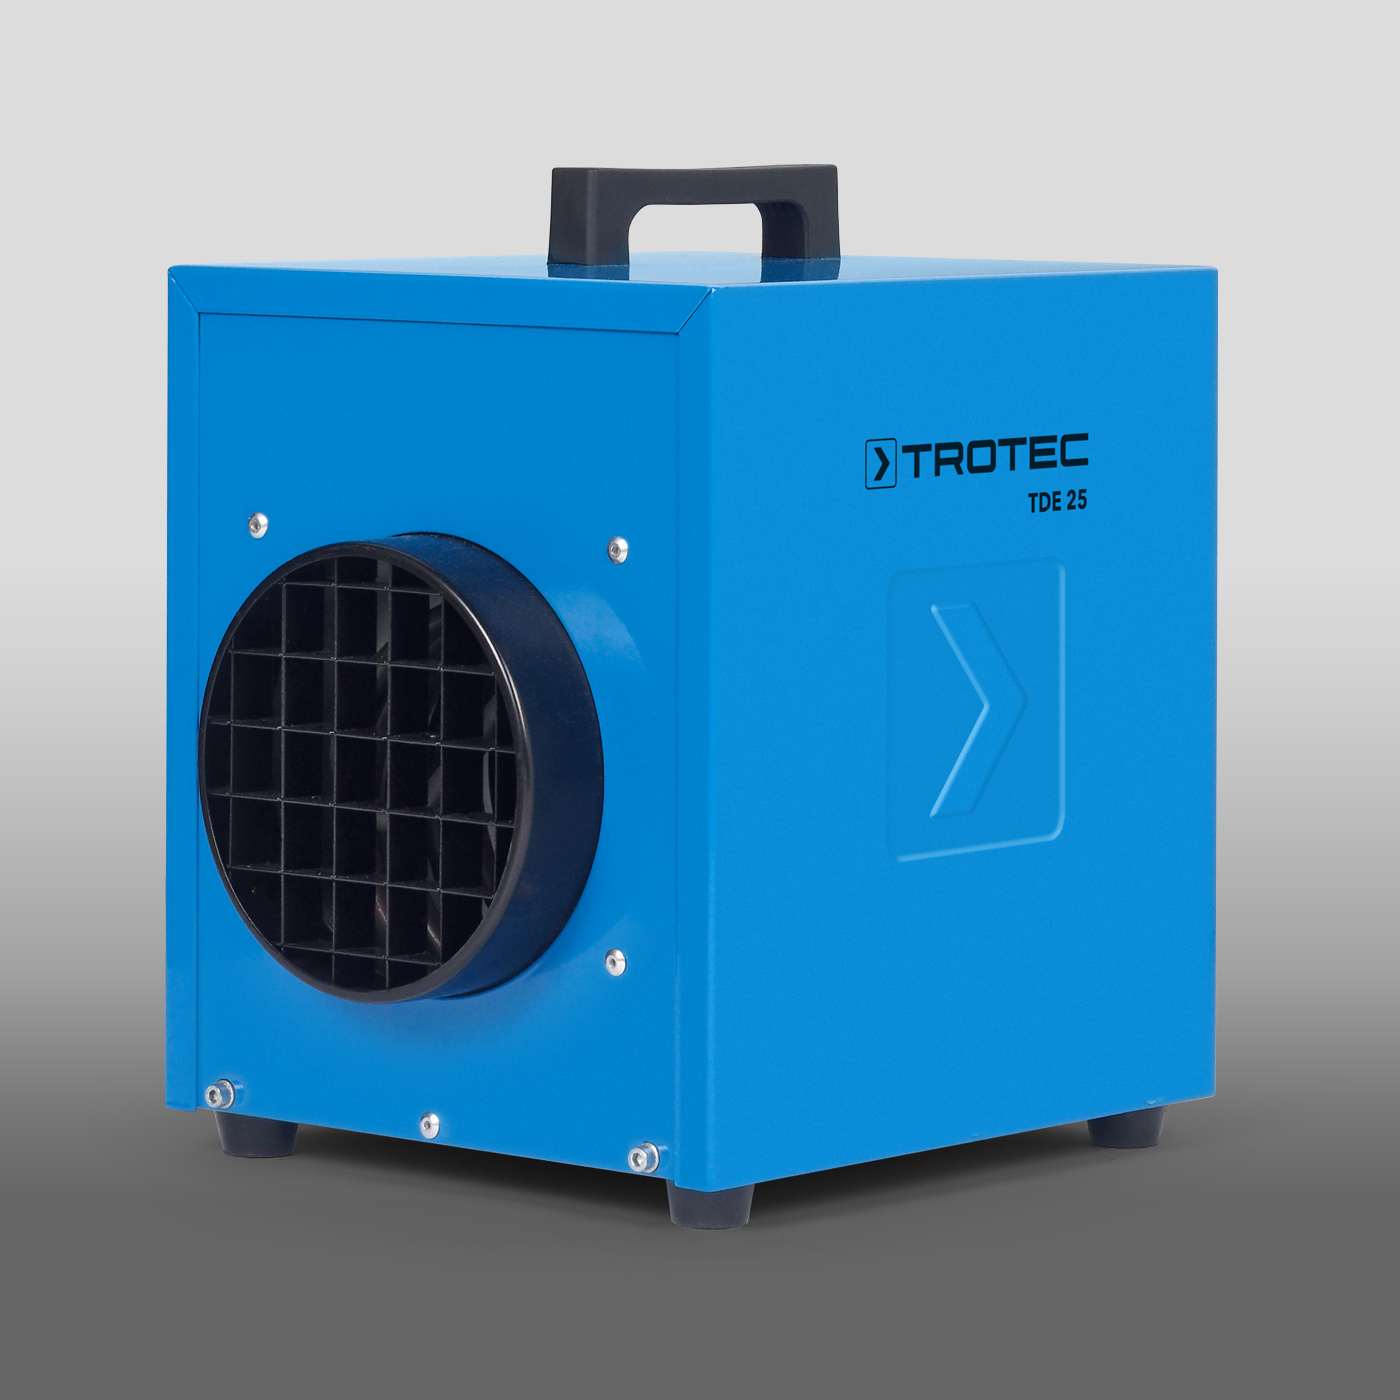 TDE 25 – calefactor eléctrico compacto para necesidades profesionales